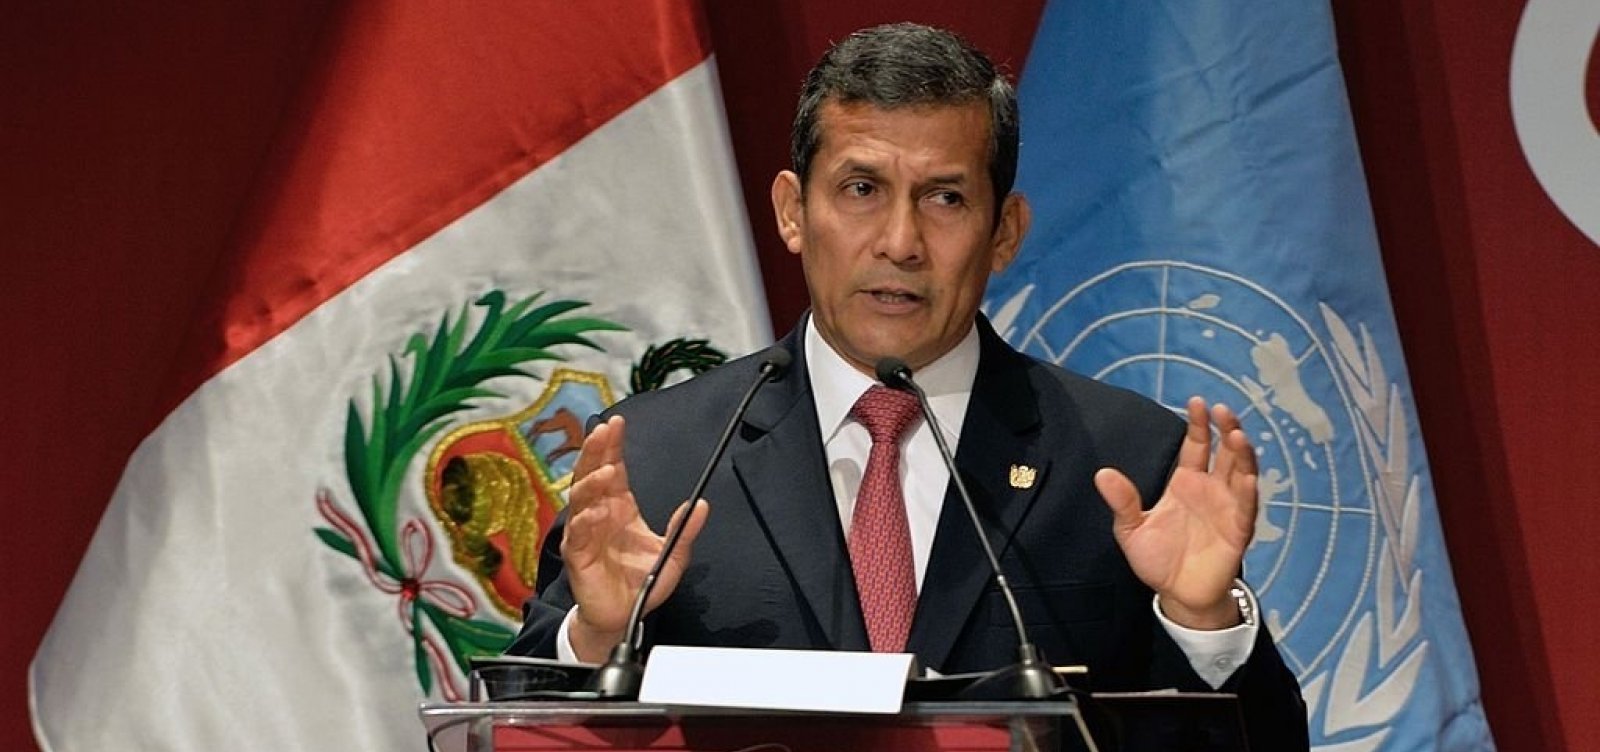 Polícia peruana realiza busca em casa de ex-presidente investigado por ligação com Odebrecht